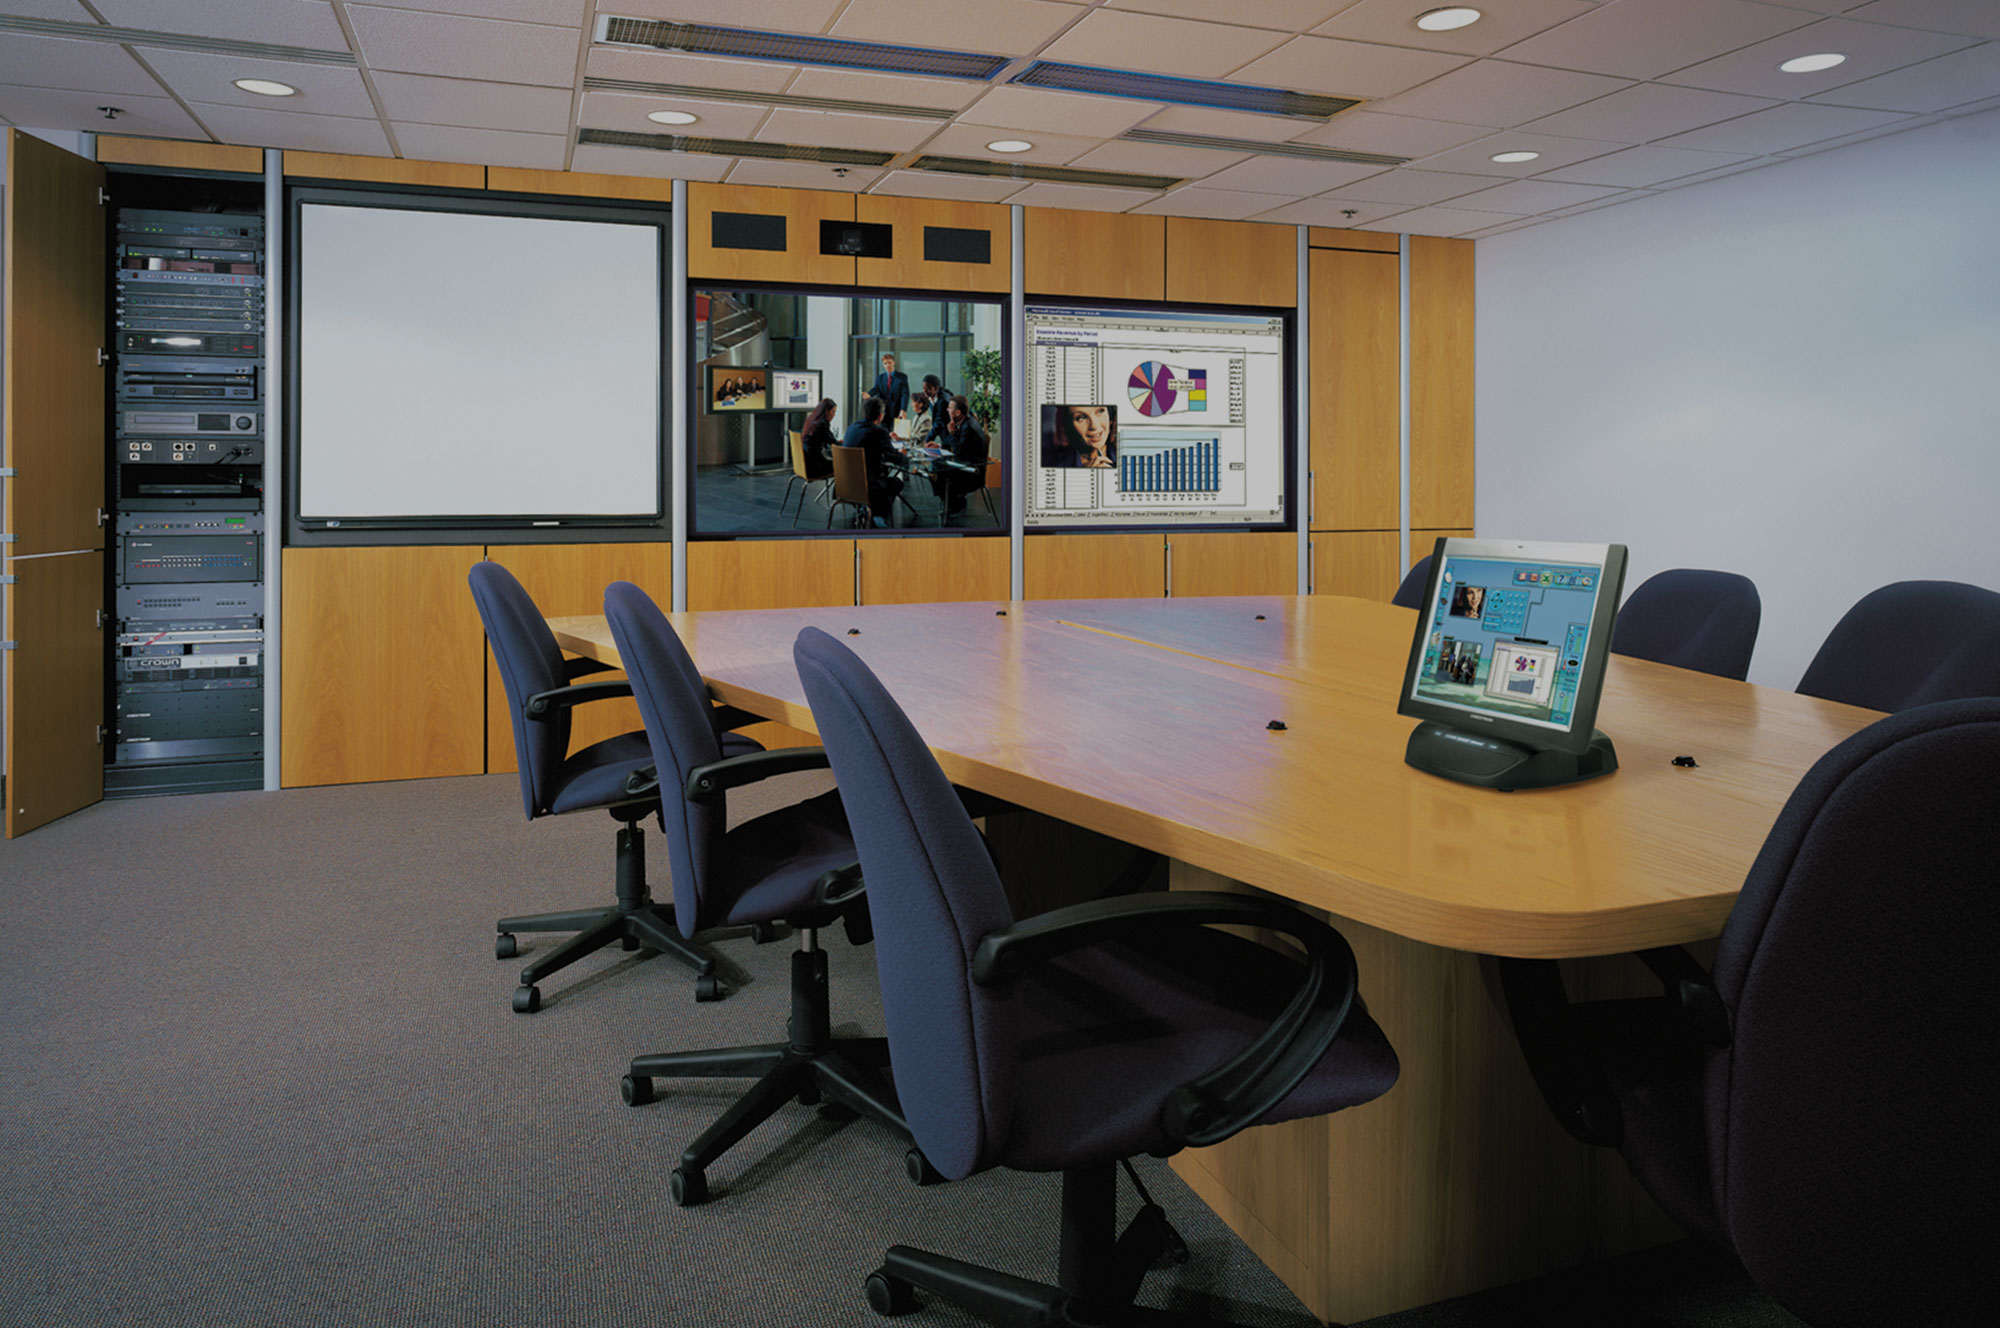 Boardroom/Conference Room Control